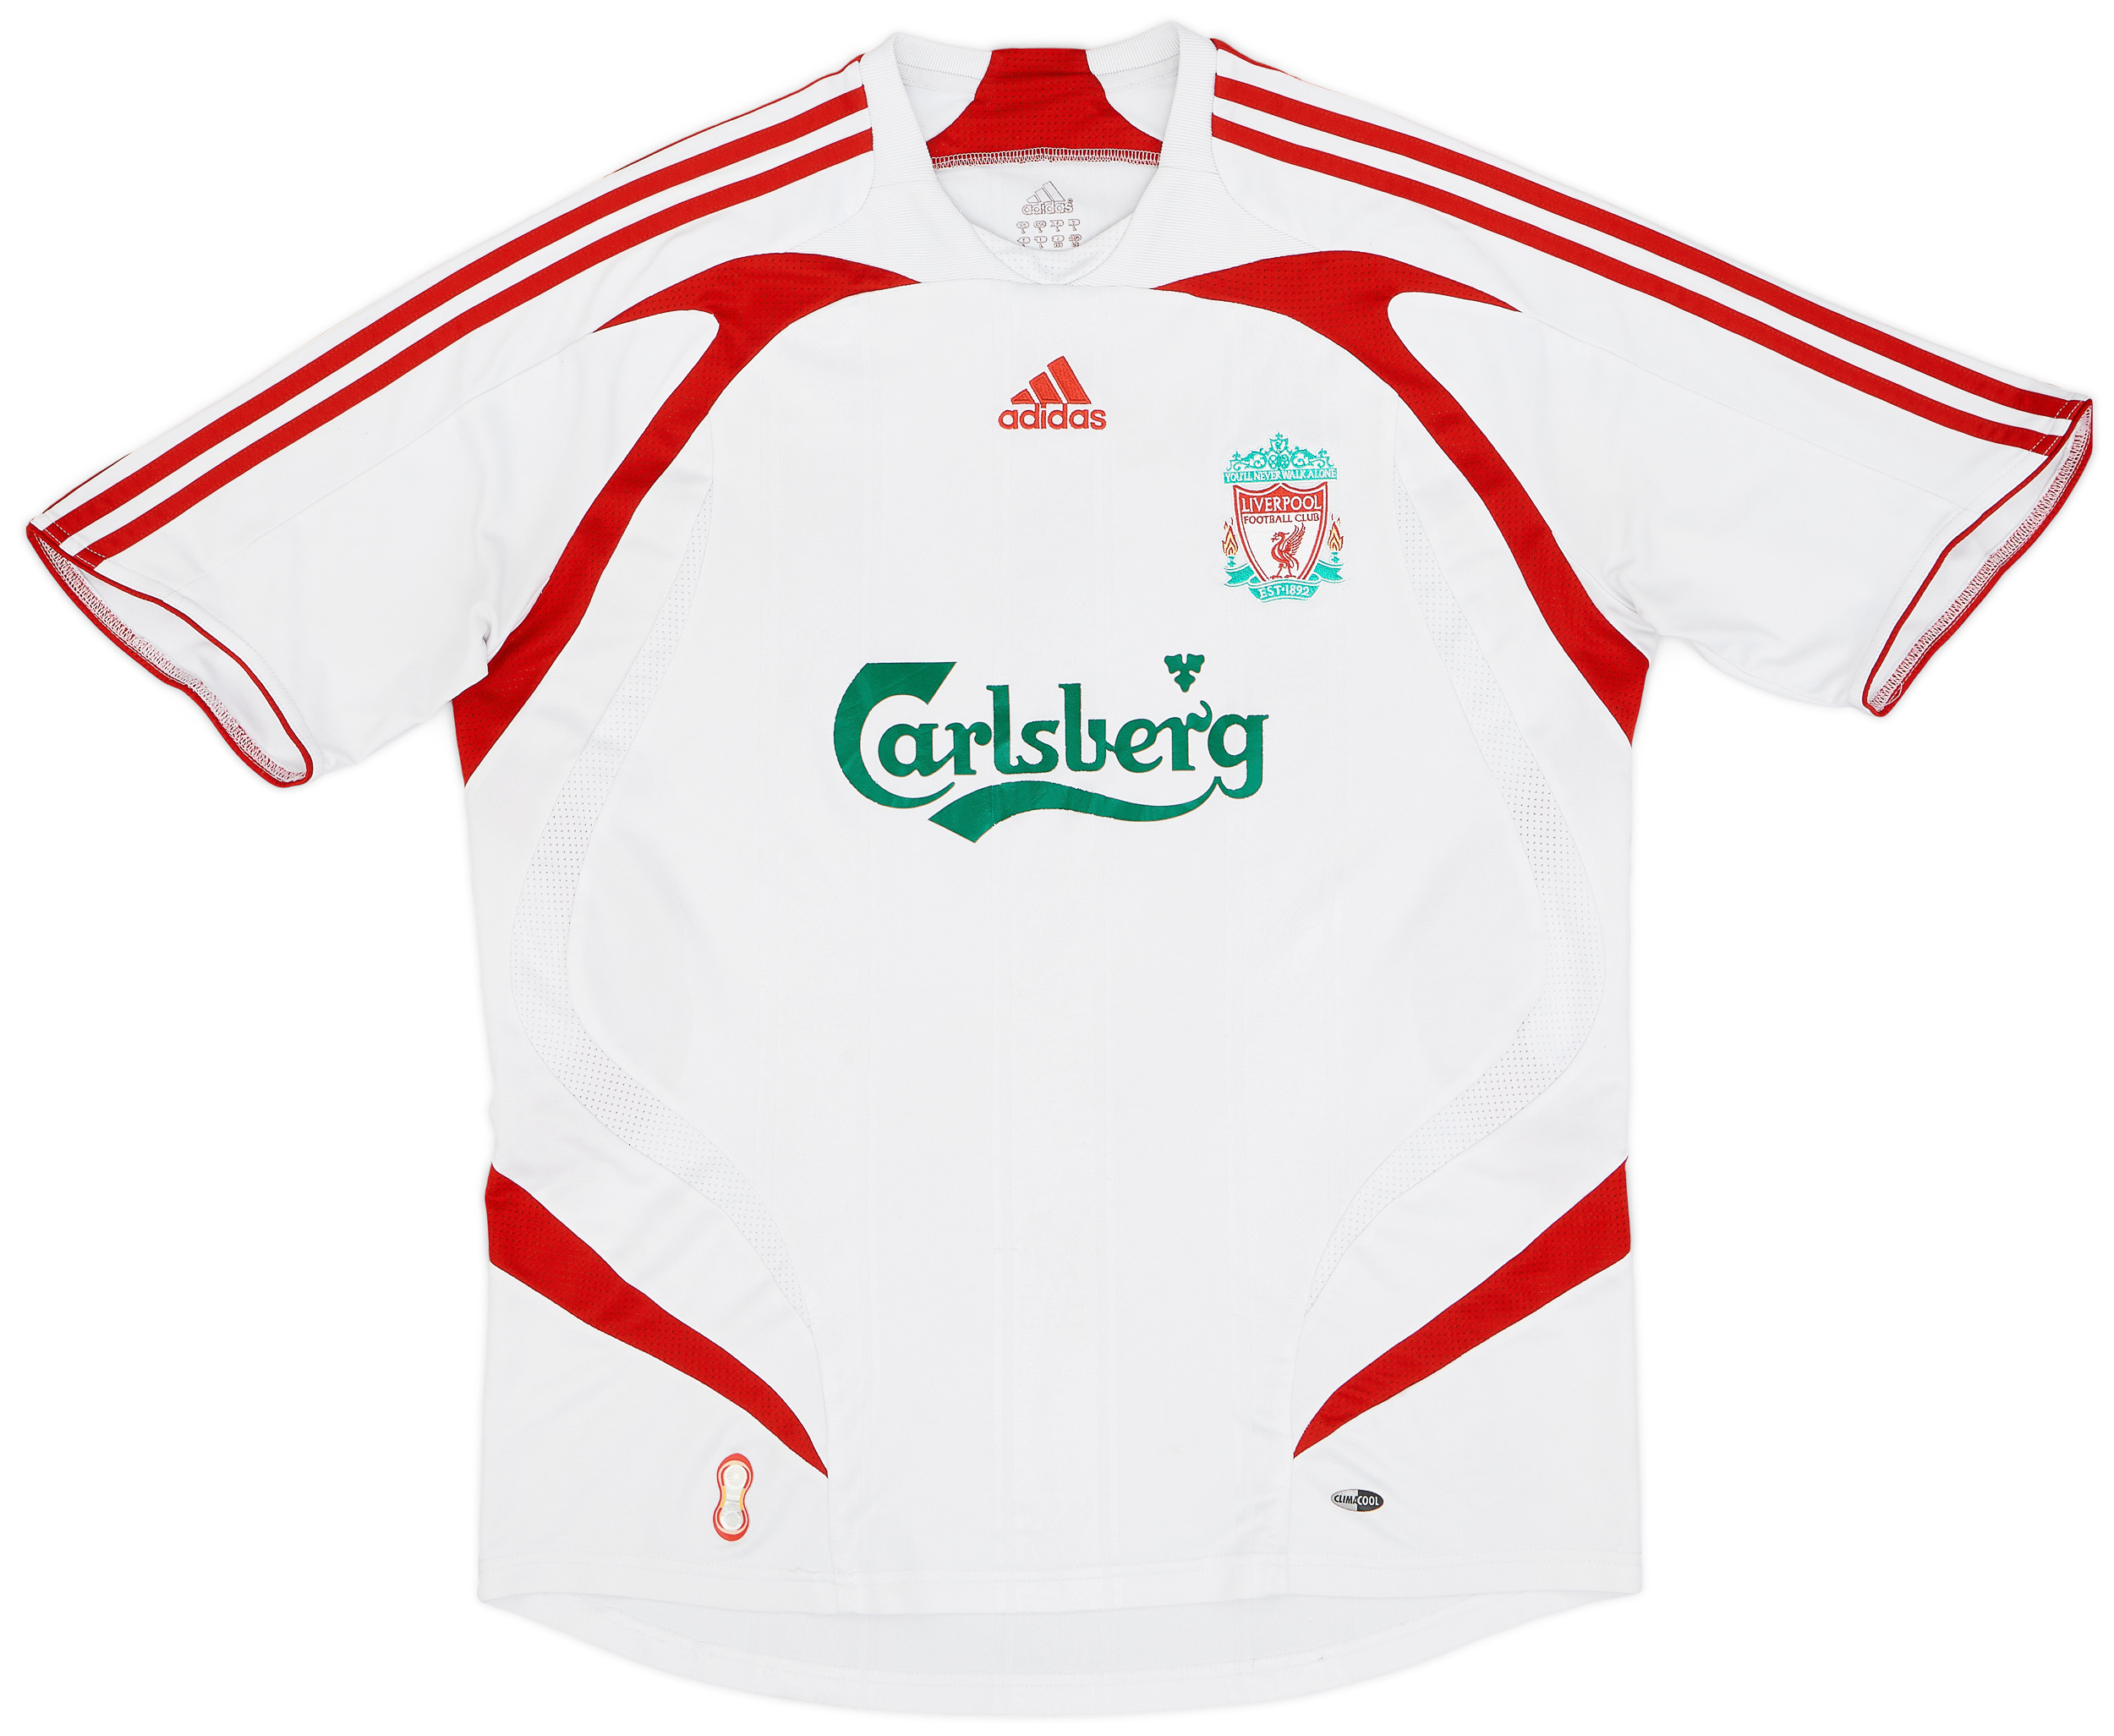 2007-08 Liverpool Away Shirt - Good 5/10 - ()